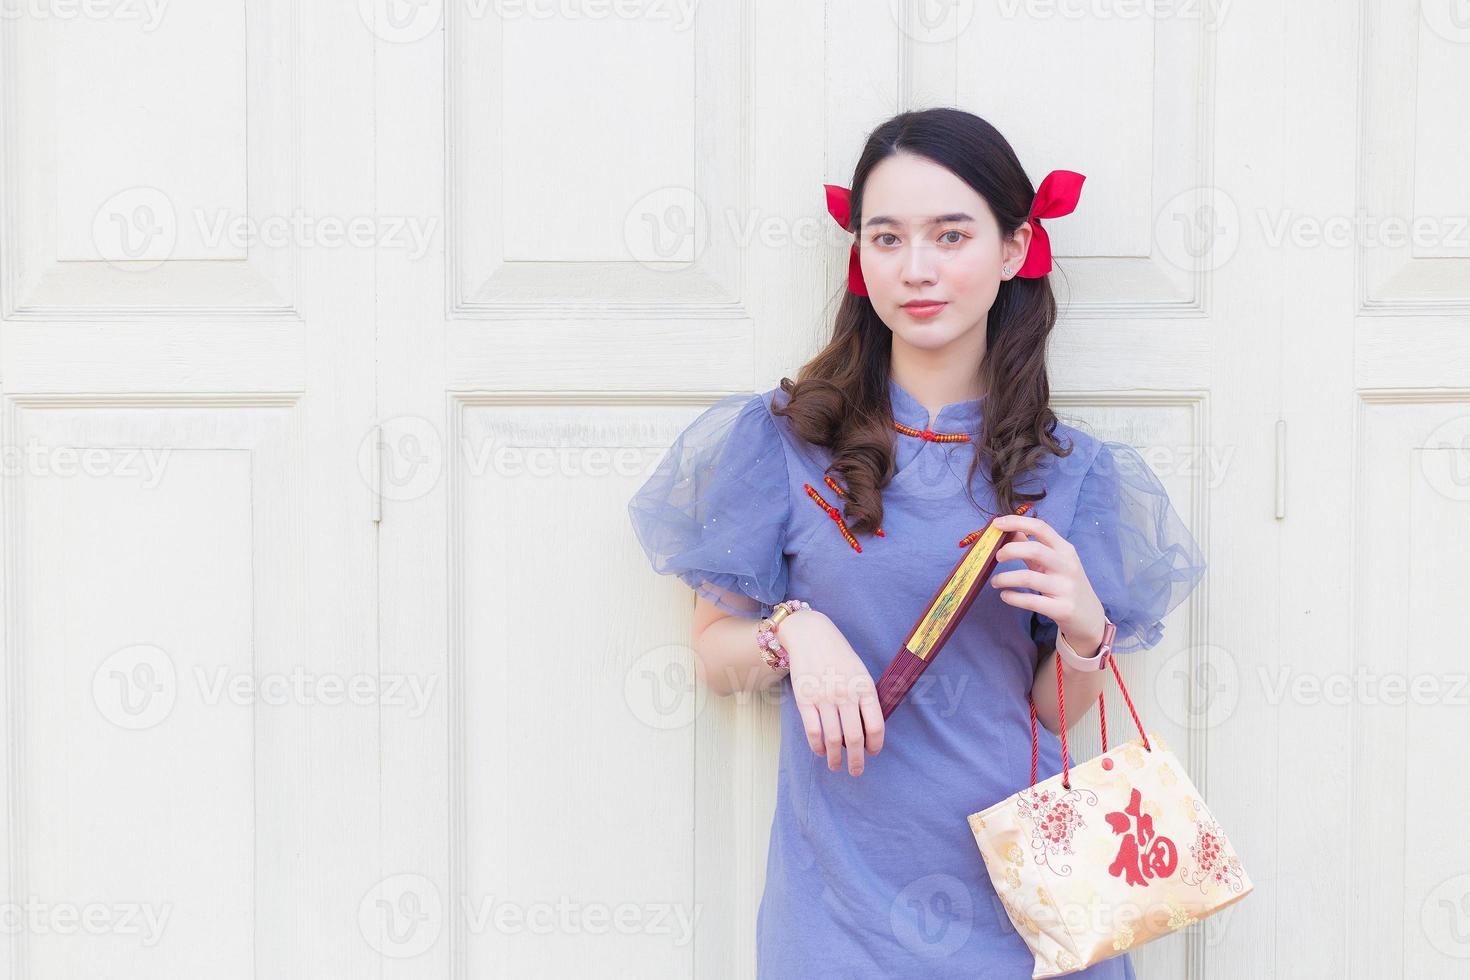 una mujer asiática vestida de qipao chino gris azulado sostiene la bolsa de tela que proyecta la palabra que significa feliz en chino y se para en una puerta de madera blanca como fondo. foto